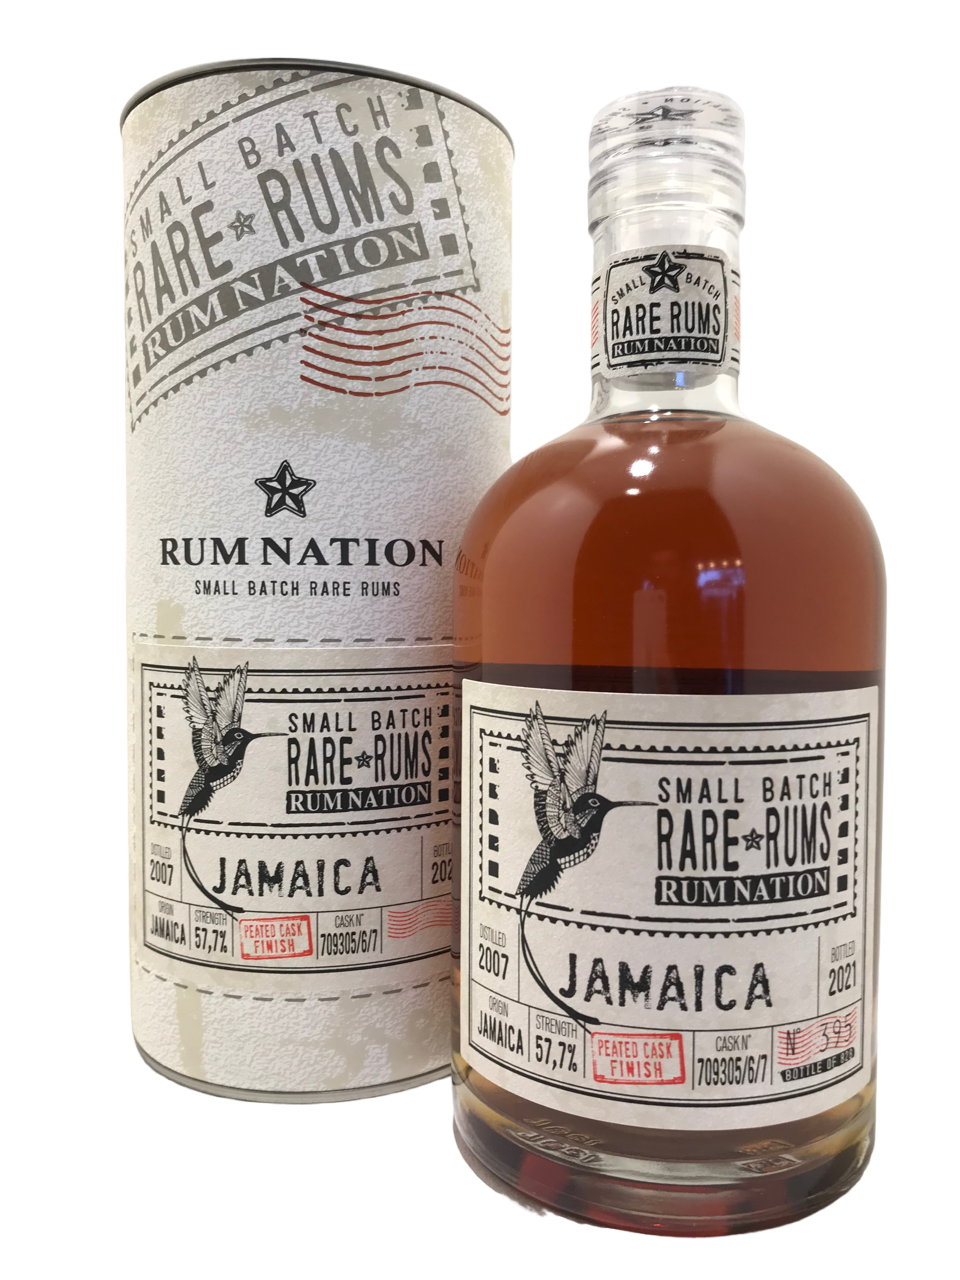 rhum rum jamaica jamaïque rum nations 2007 spirit spiritueux peated cask finish